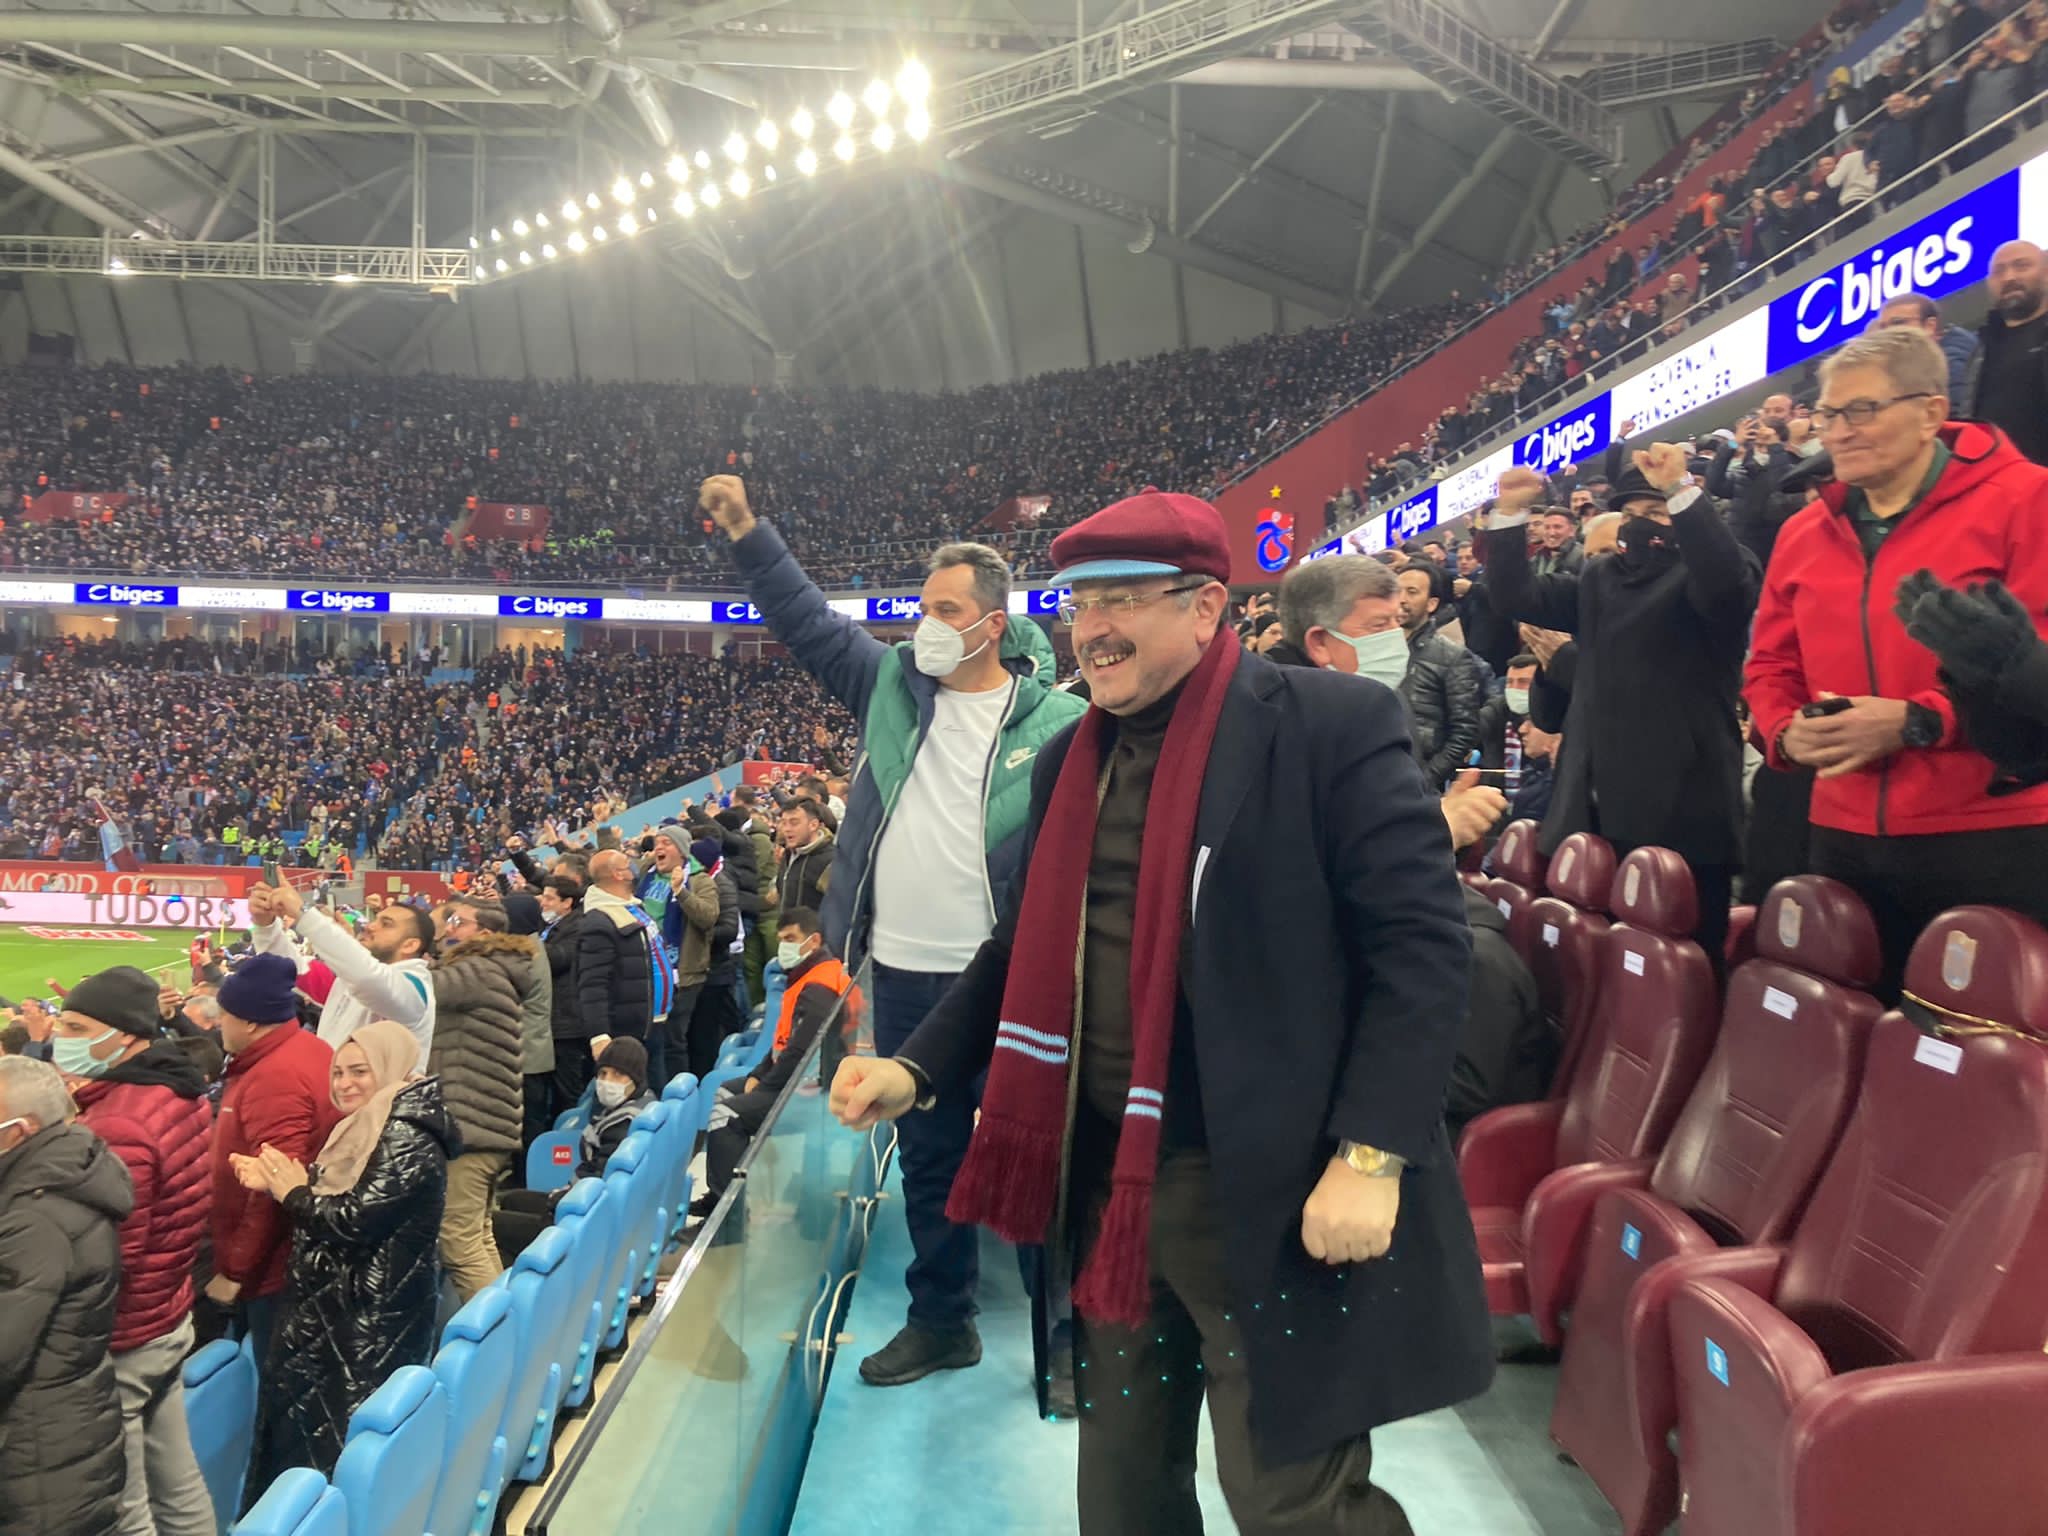 Ahmet Metin Genç'ten Trabzonspor mesajı: “Tam da şimdi destek zamanı”